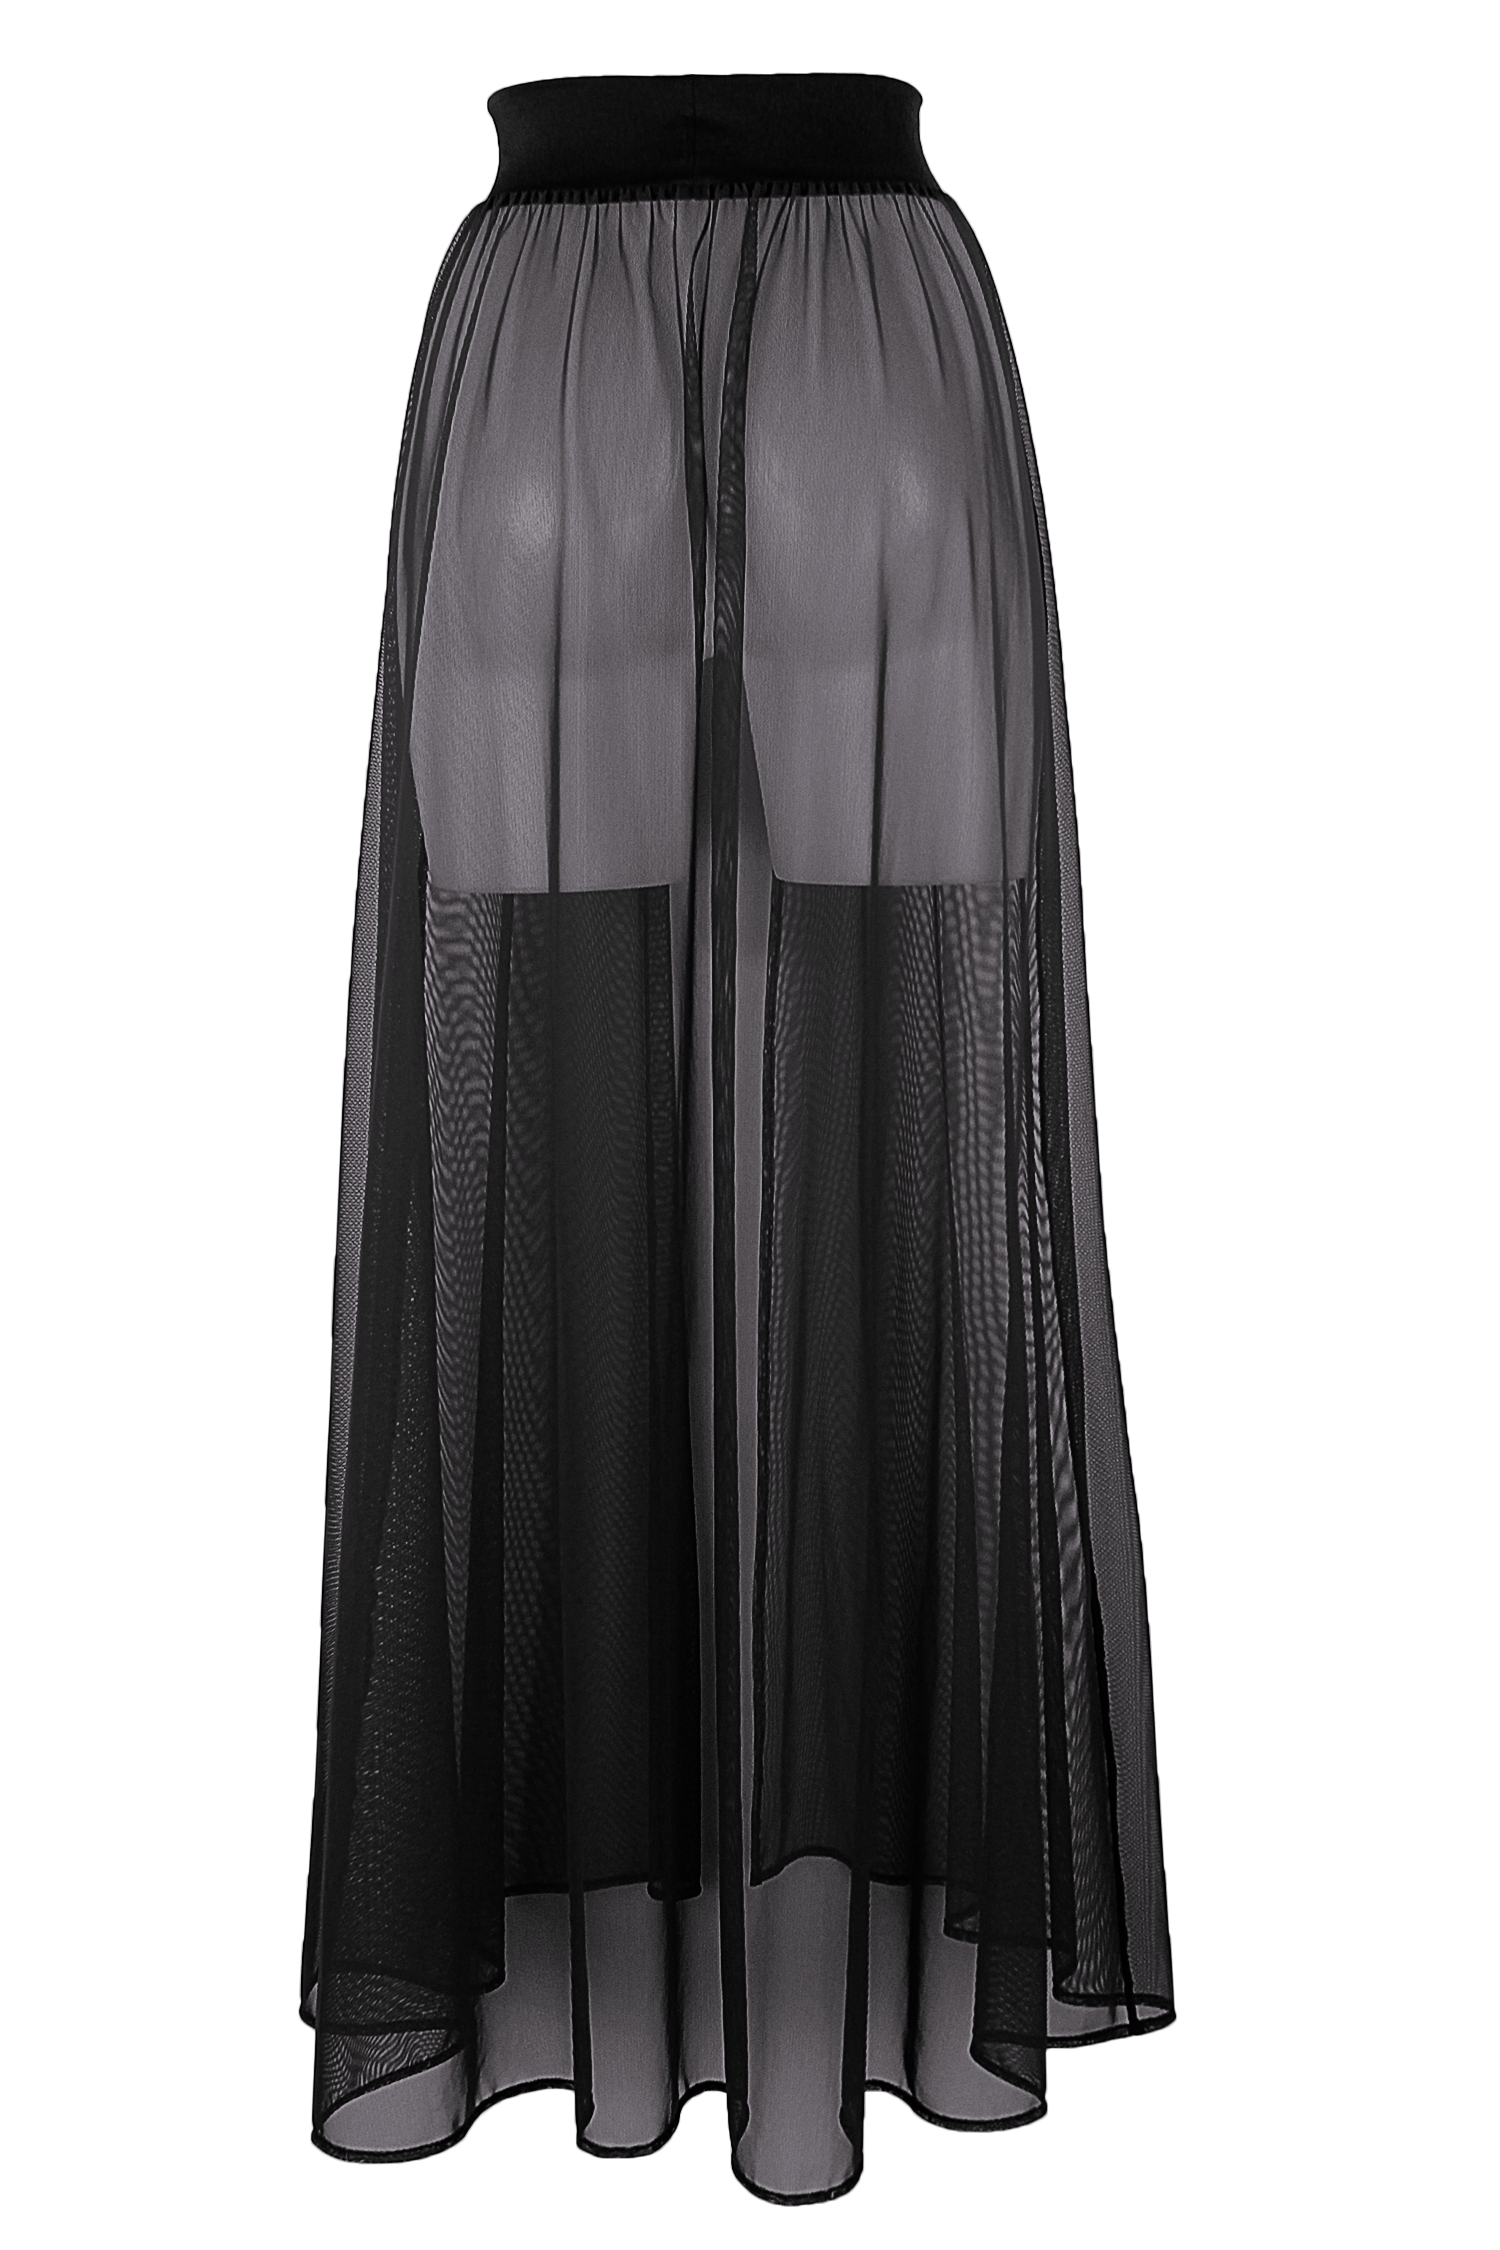 Skirt Black Silk PNG HD Quality